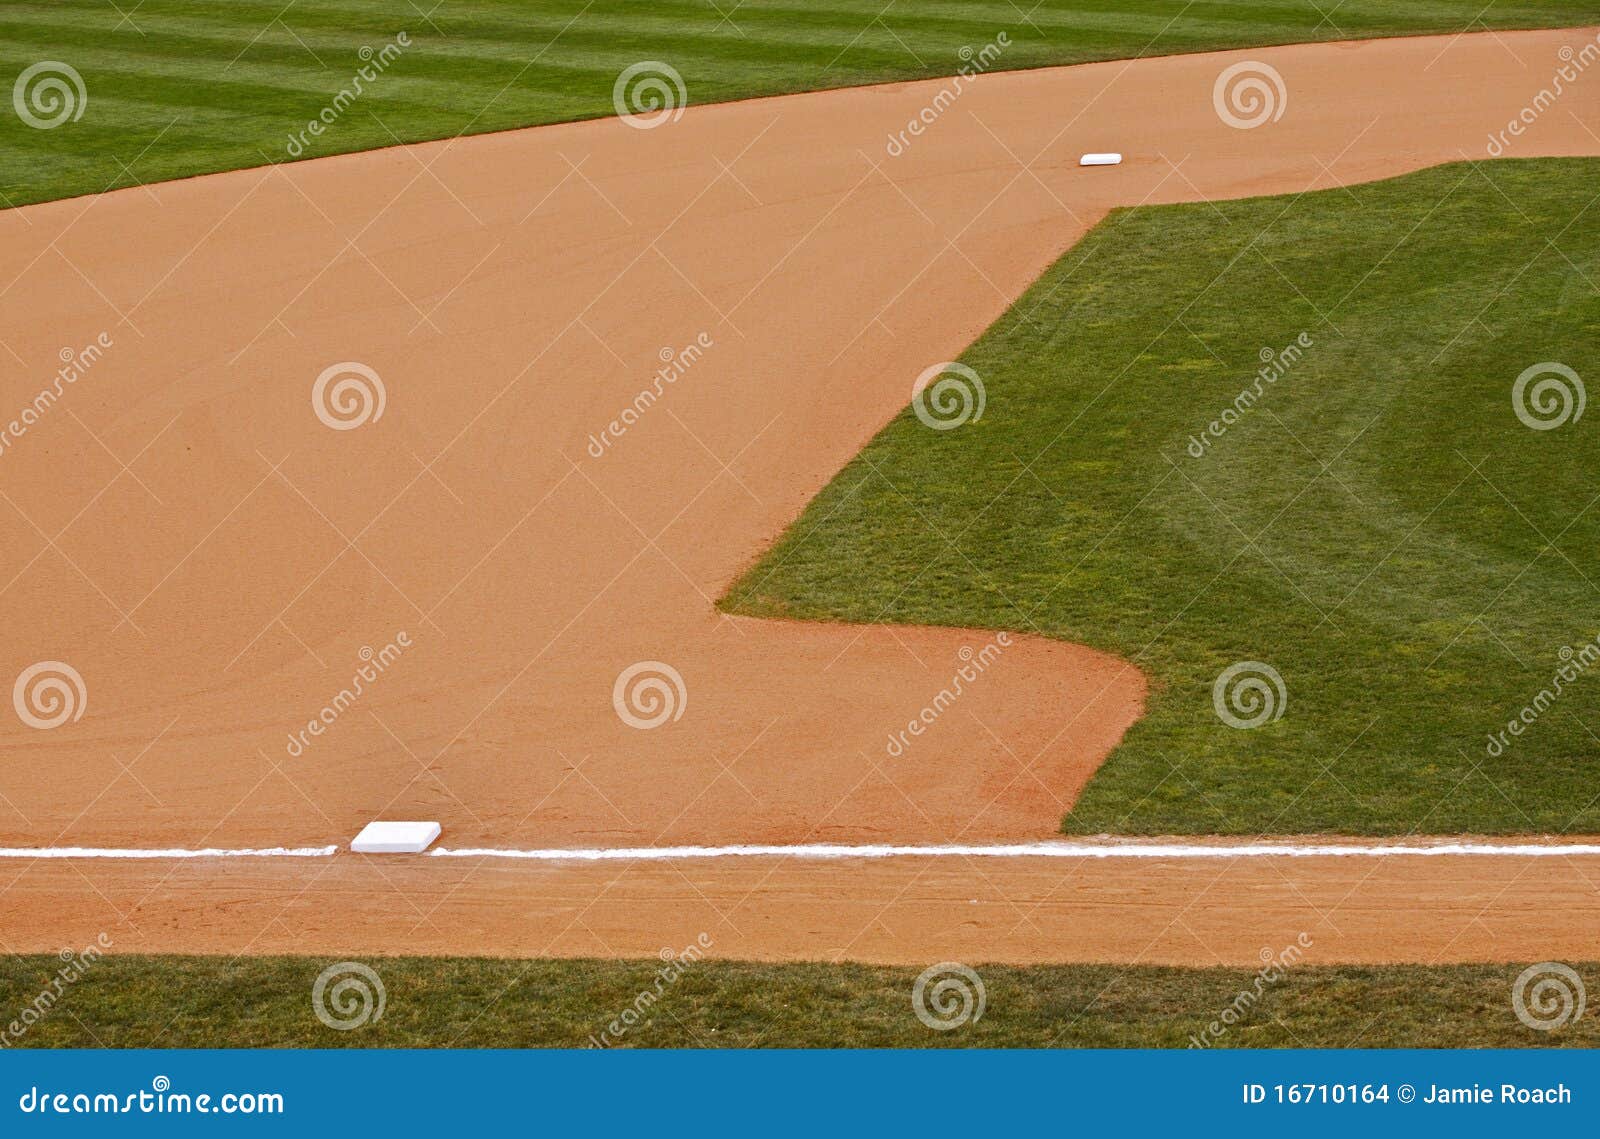 baseball infield grass dirt bases